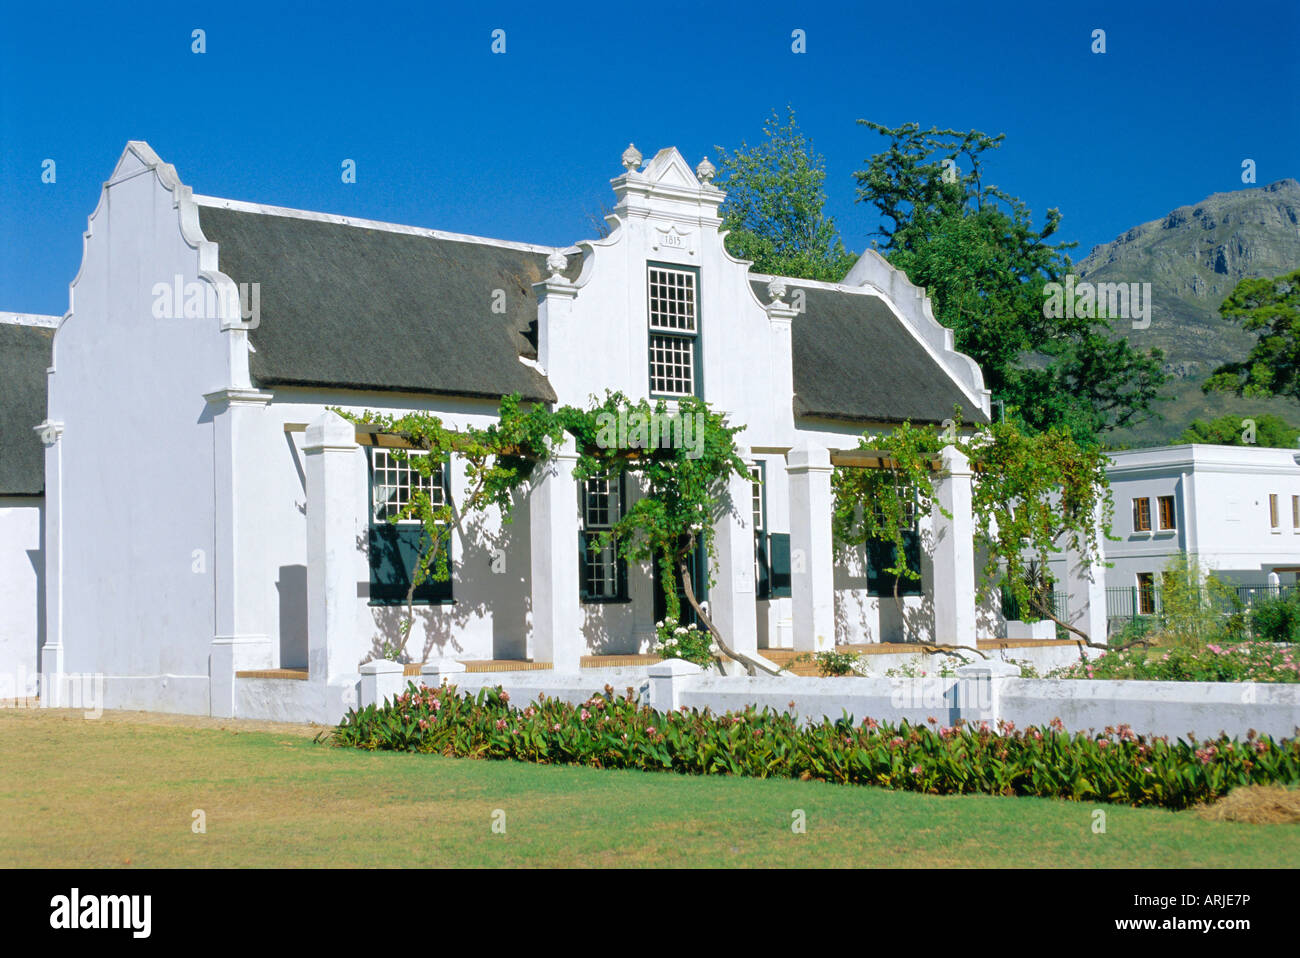 Cape niederländischen Architektur, Anfang 19. Jh. Stellenbosch, Südafrika Stockfoto